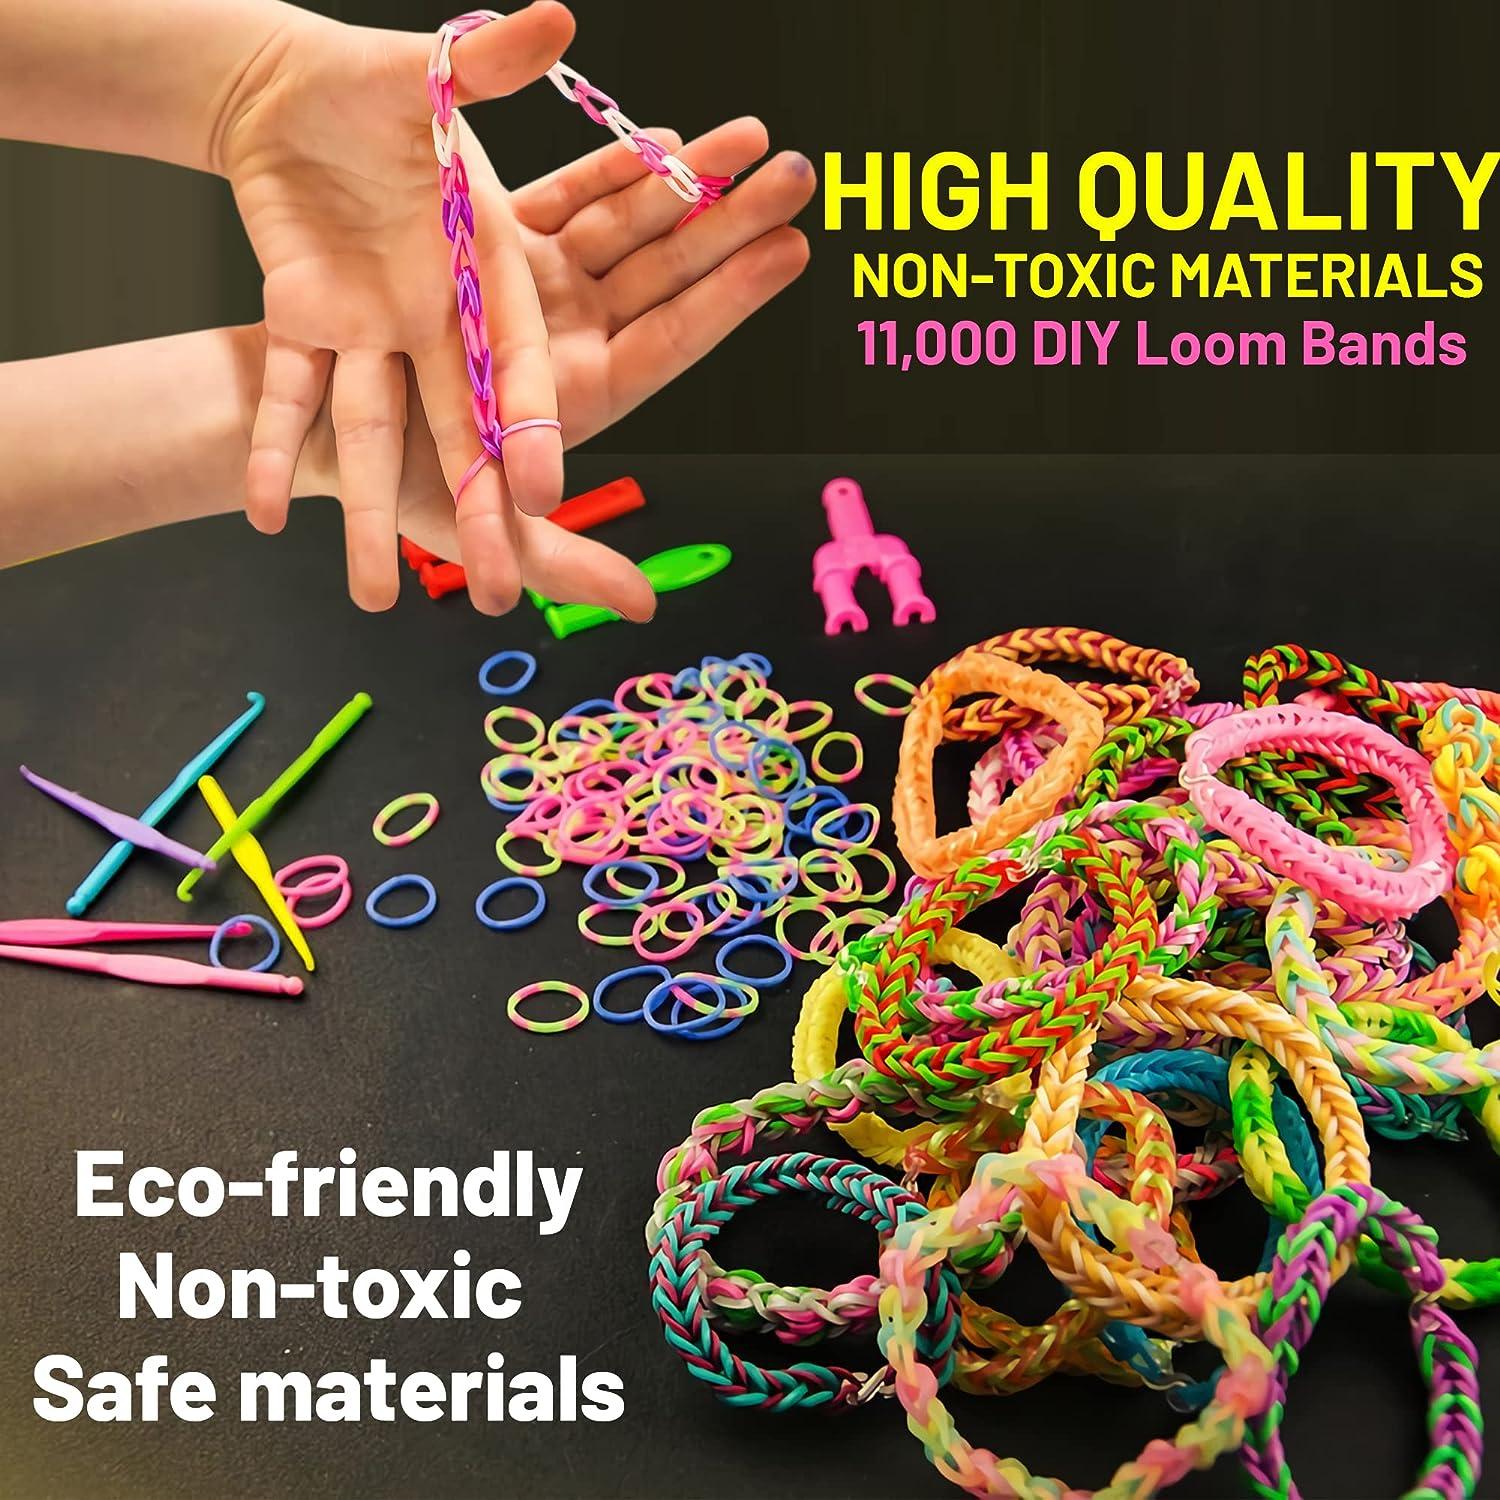 11,900+ Rubber Band Bracelet Refill Kit - 11,000 Premium Loom